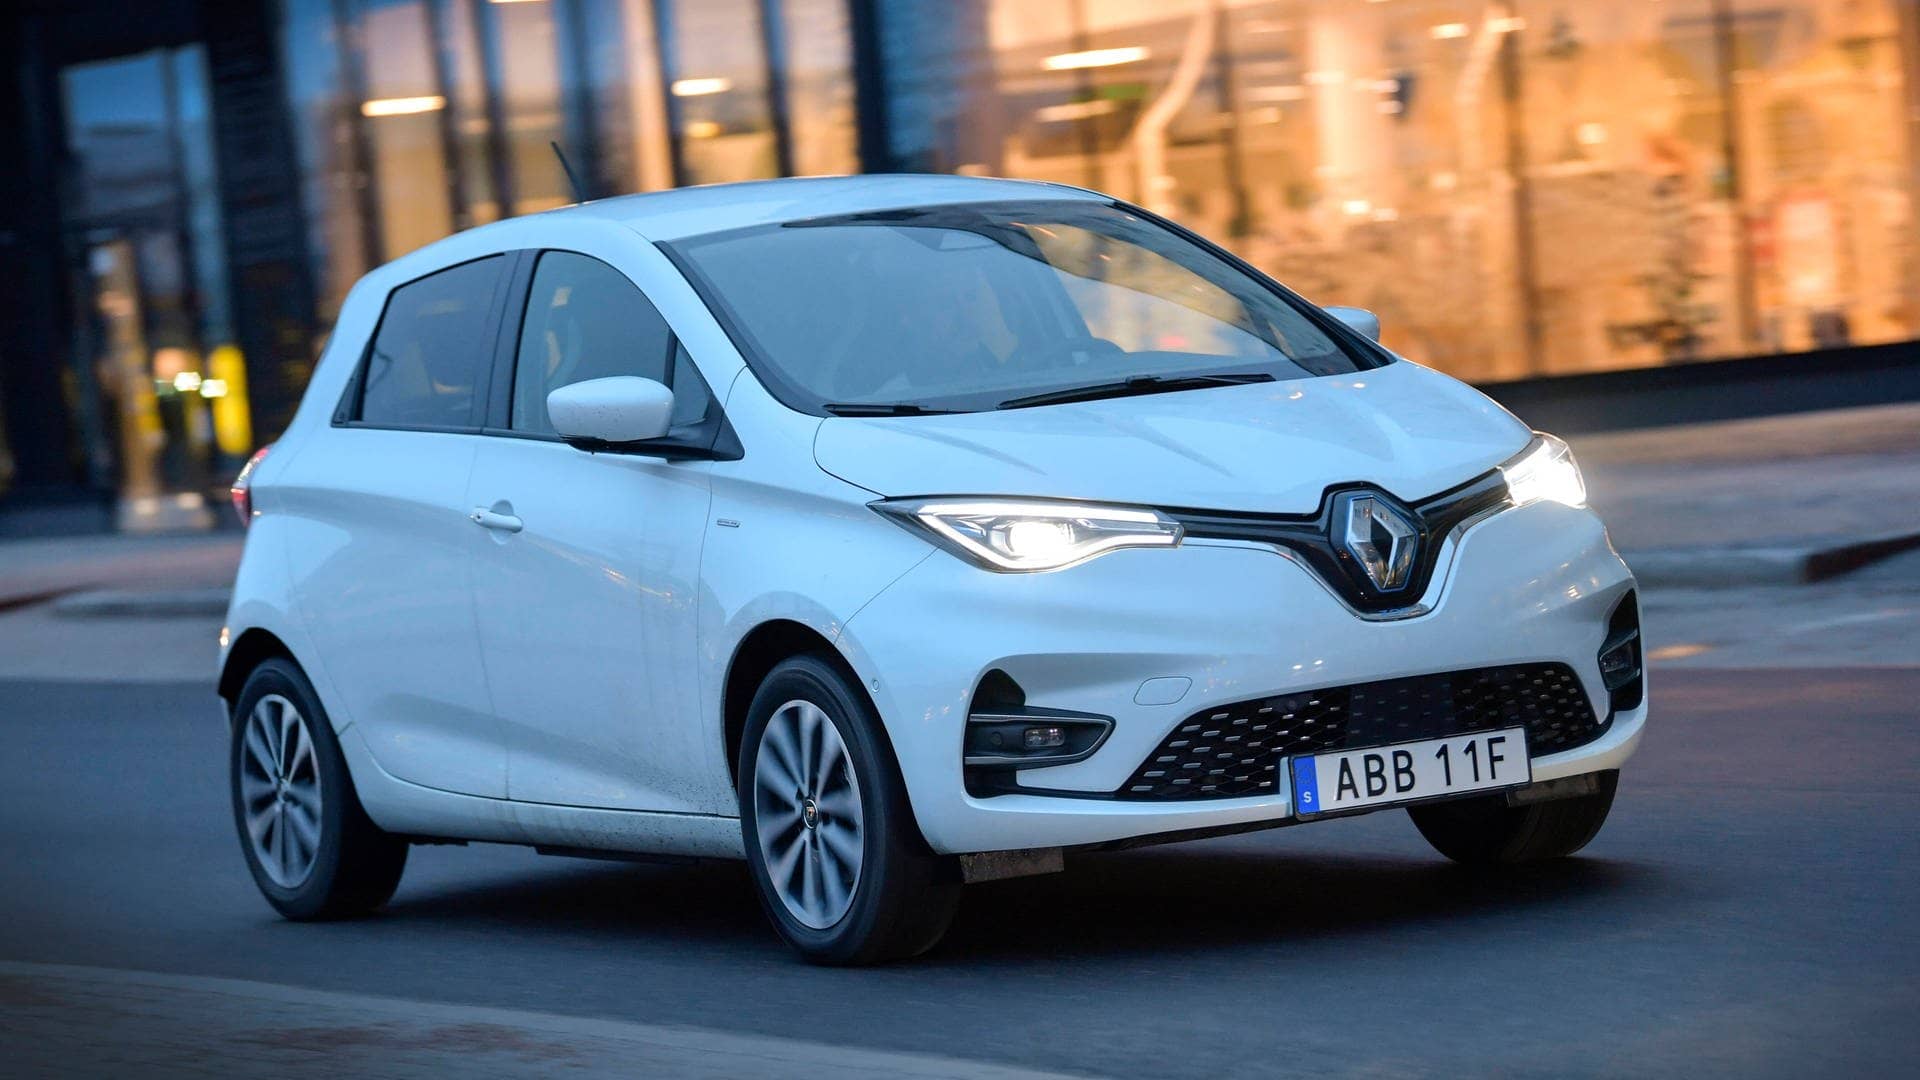 Der Renault Zoe ist schon länger auf dem Markt. Gerade gibt es das Auto sogar zu Schnäppchenpreisen von ca. 7.000 Euro, sagt die Expertin. „So günstig kommt man kaum an ein sehr gutes Elektroauto heran, das auch für die Stadt sehr tauglich ist.“